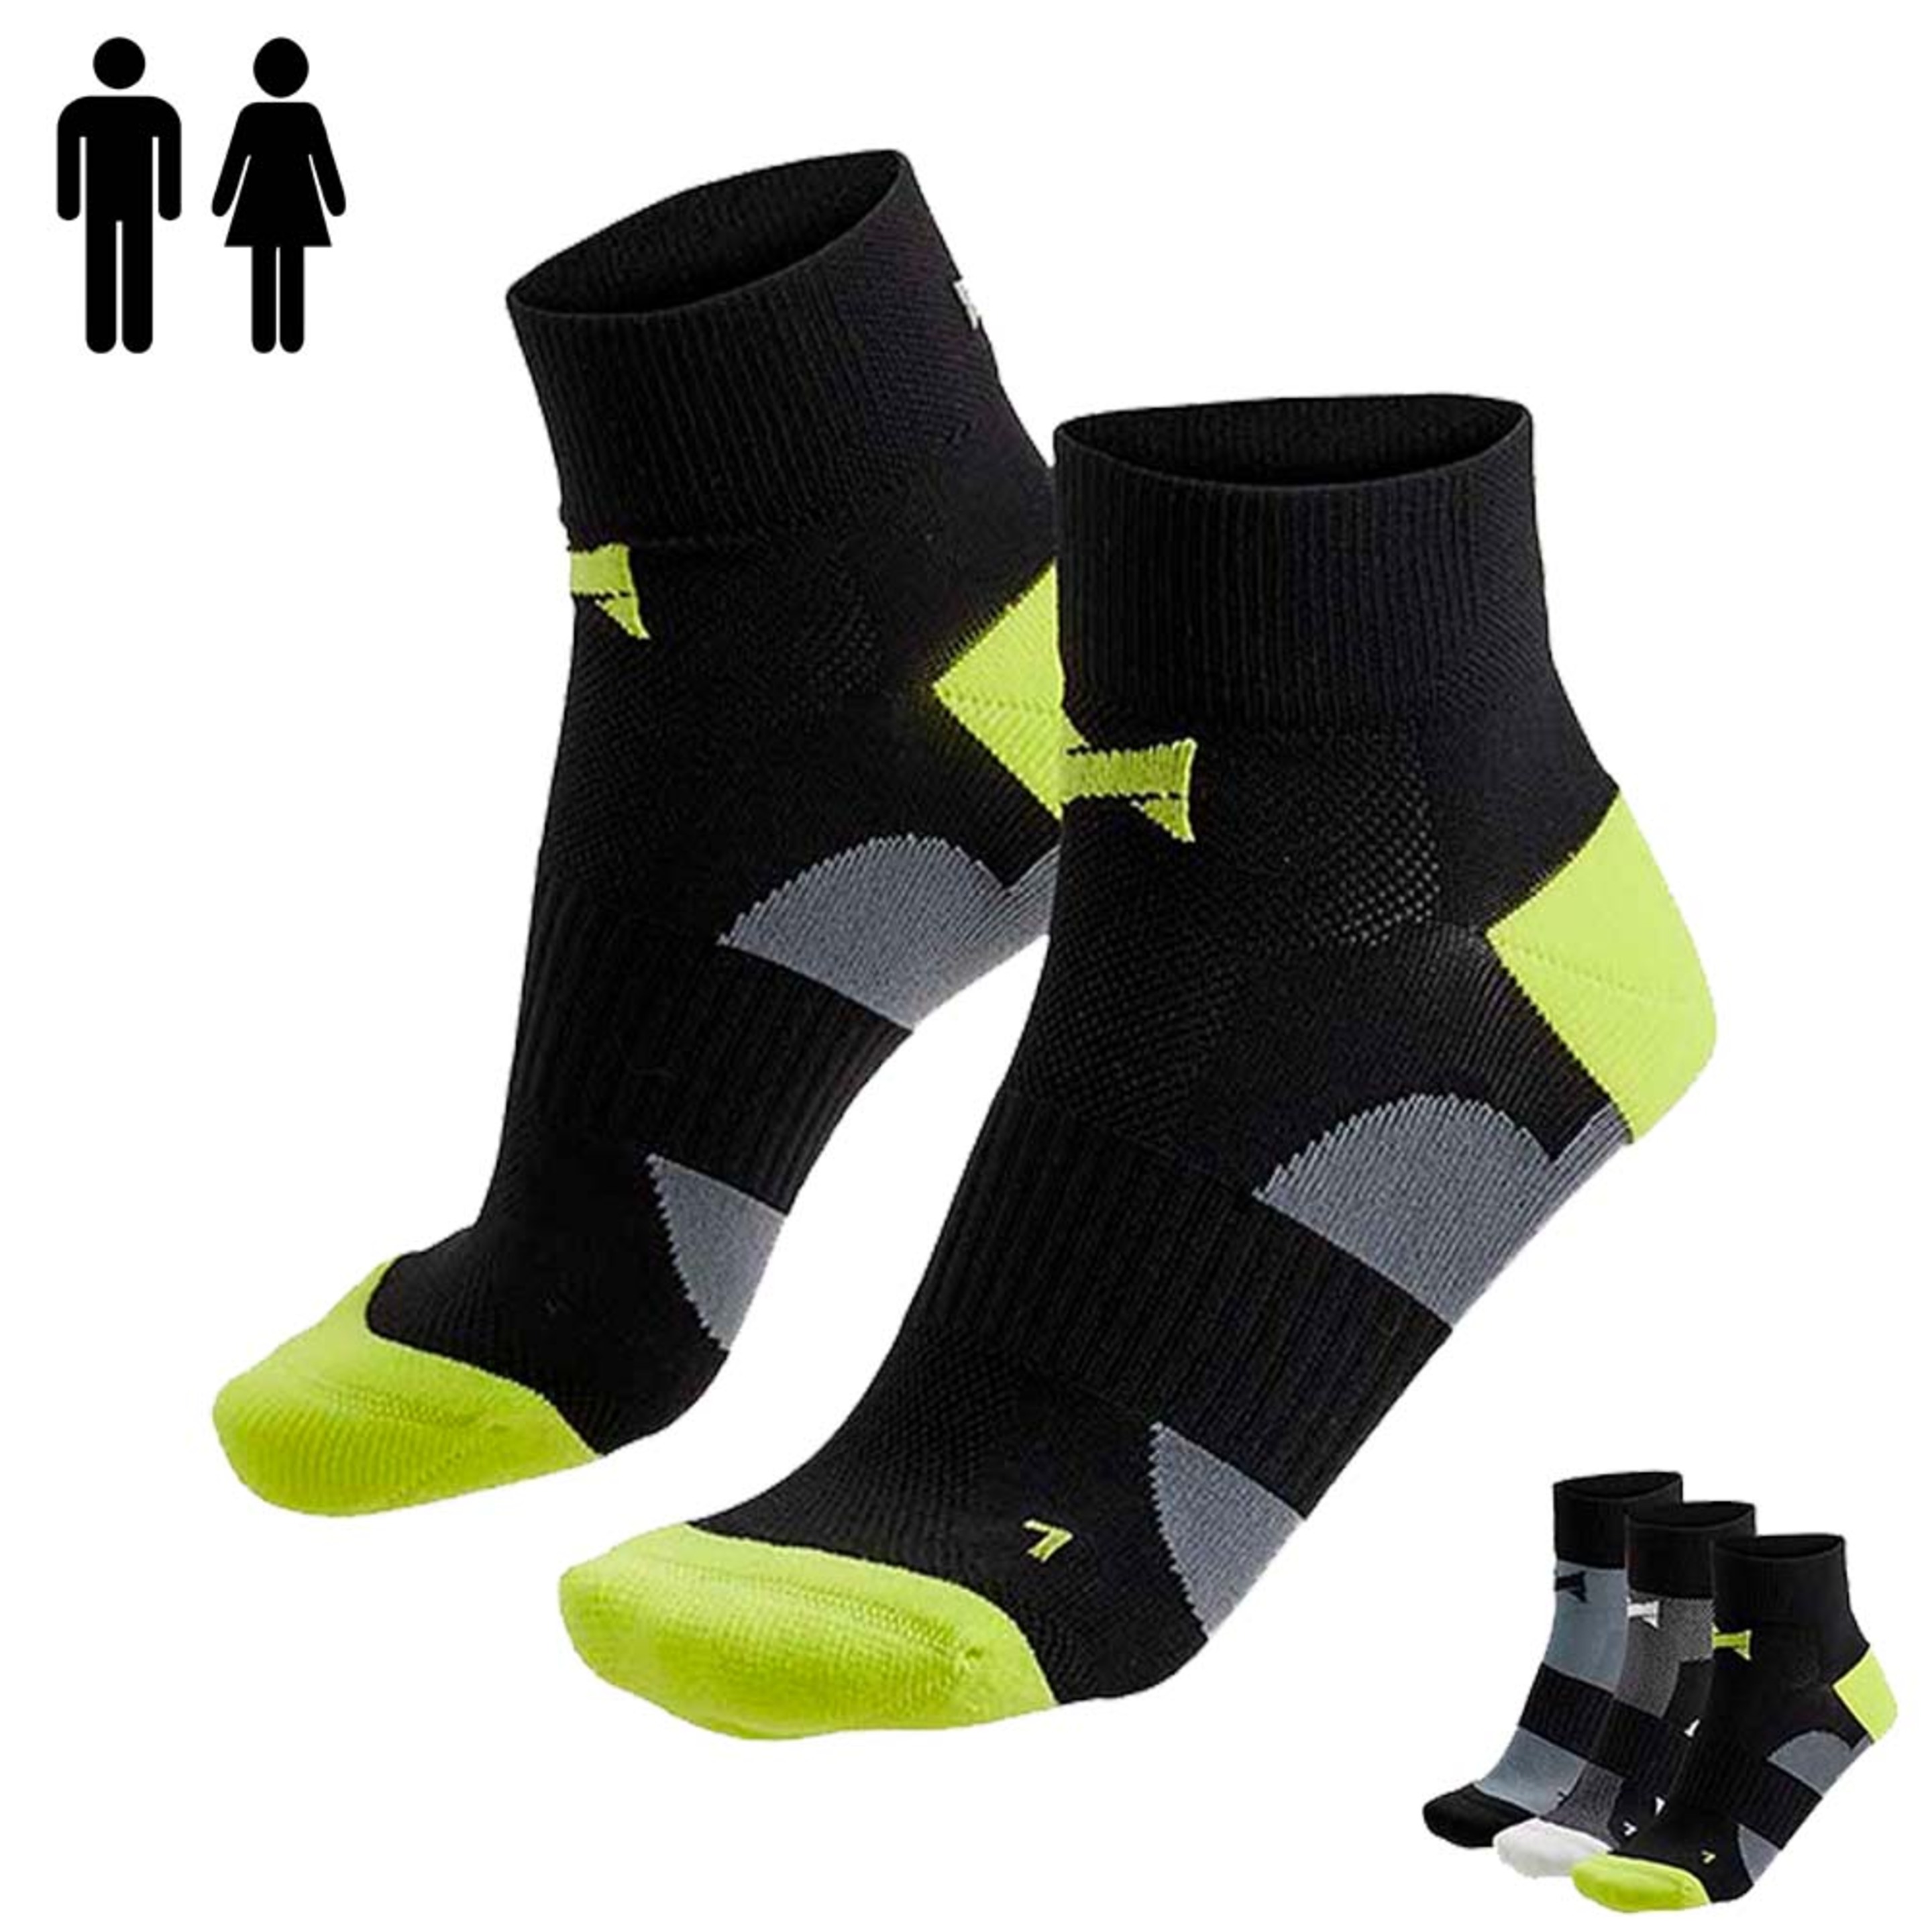 Paquete 3 Pares De Calcetines Xtreme Sockswear De Ciclismo - Negro - Reflector En La Parte Trasera  MKP